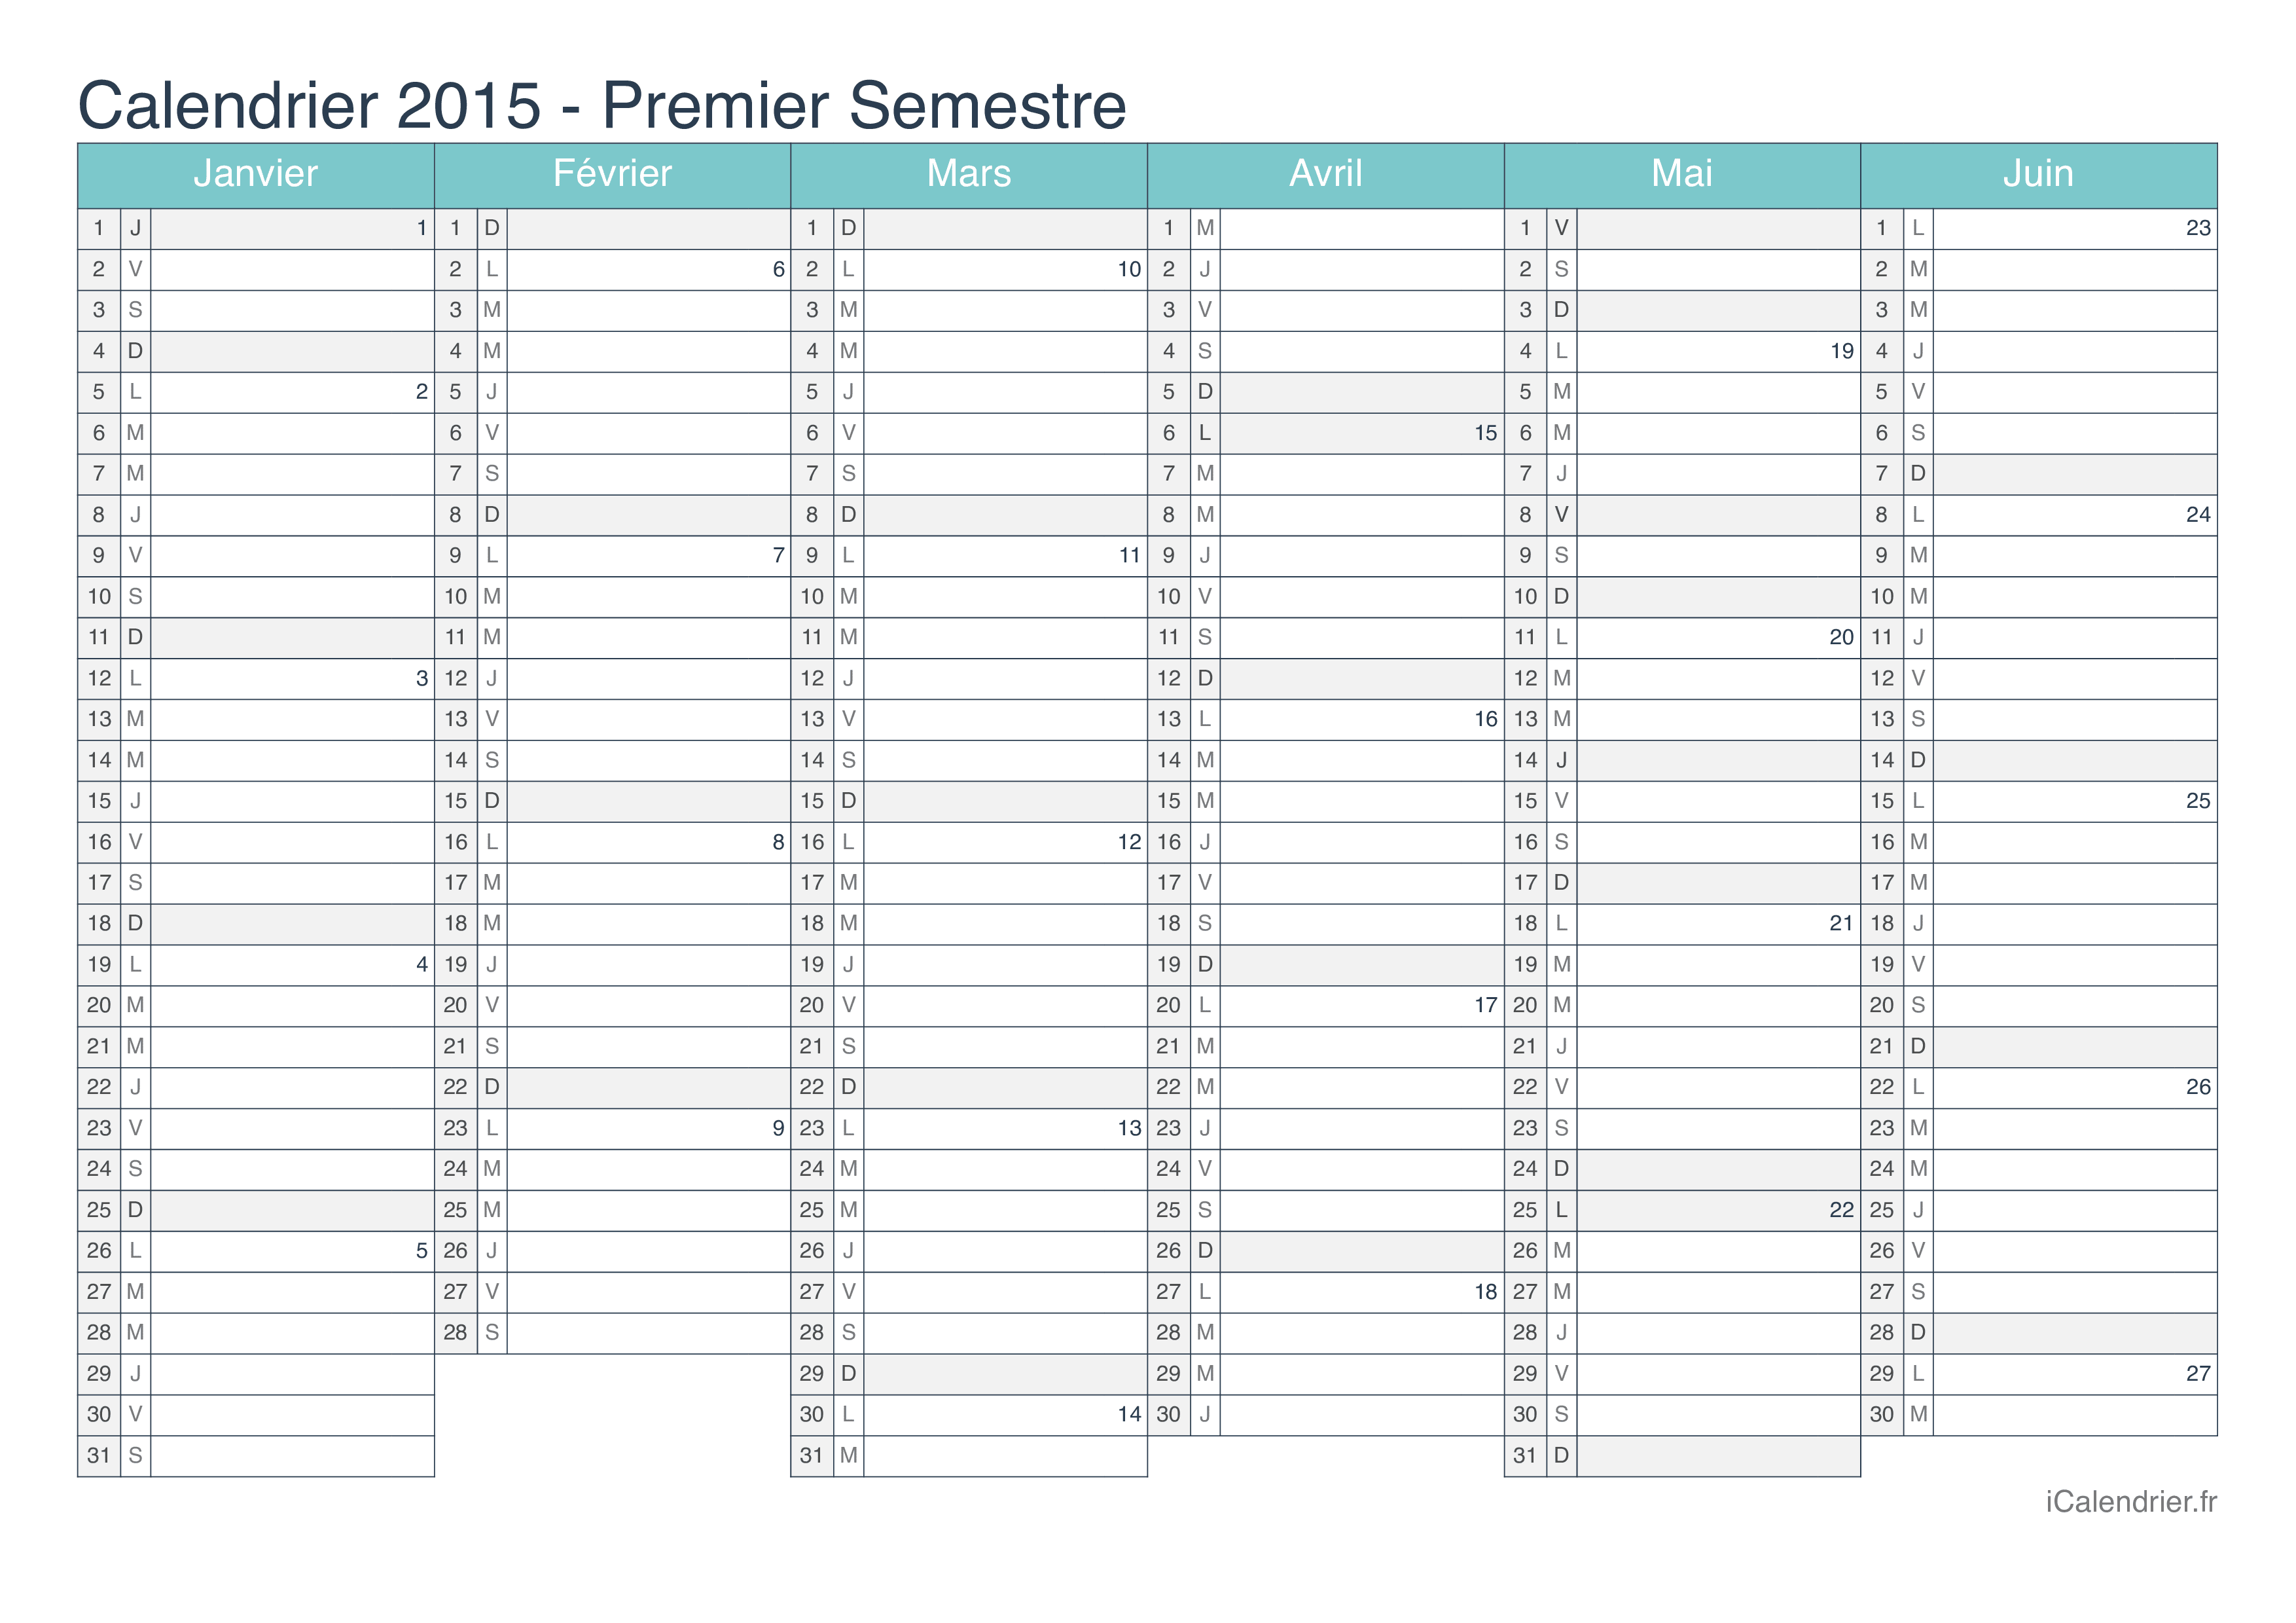 Calendrier par semestre avec numéros des semaines 2015 - Turquoise